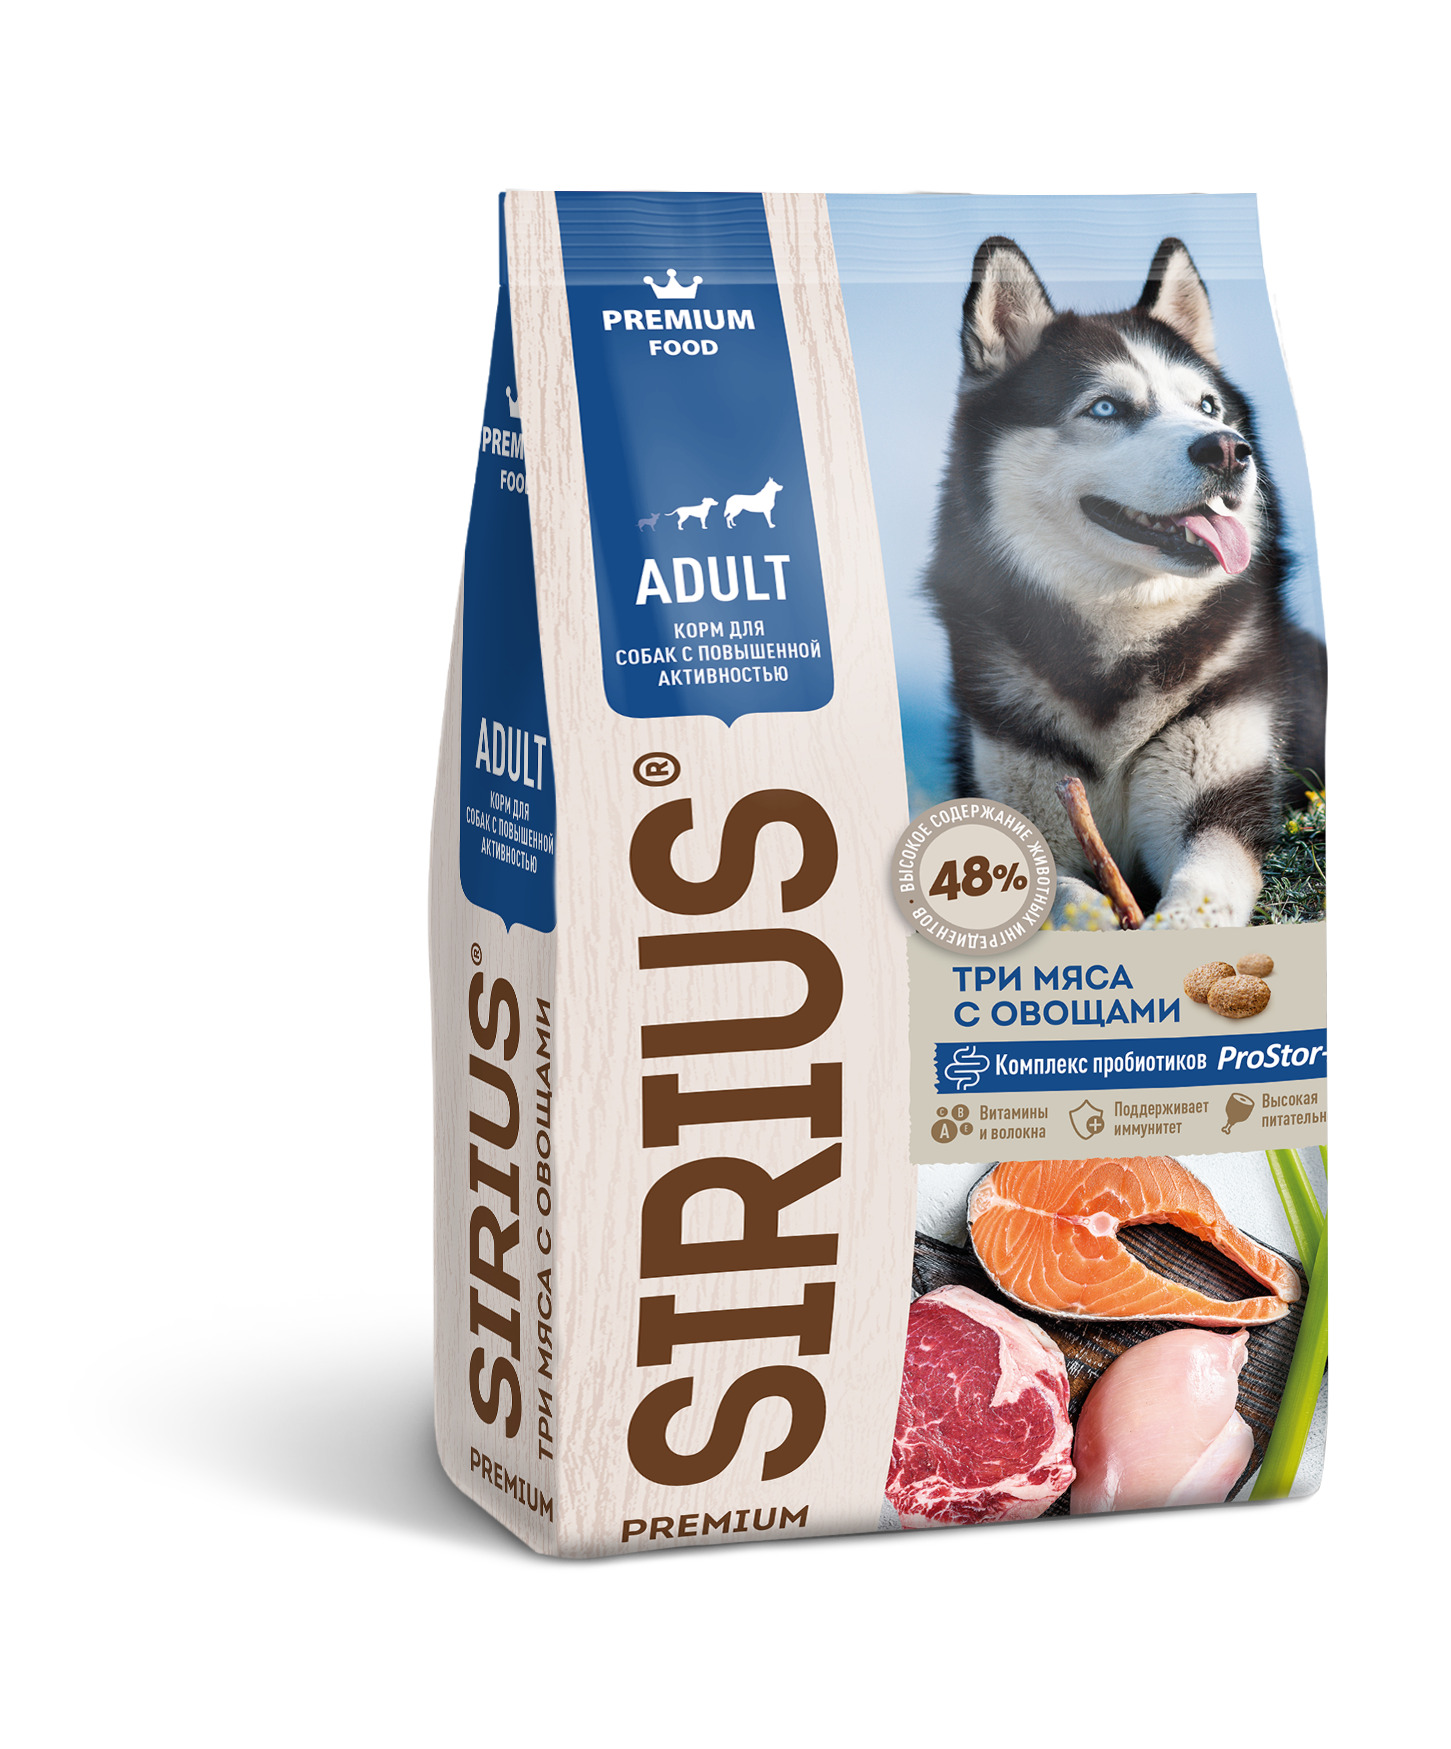 Корм сириус для собак 15 кг. Сириус 20 корм. Sirius корм для собак. Сириус премиум корм для собак 20 кг. Sirius Dog корм для собак с повышенной активностью три мяса с овощами 15 кг.